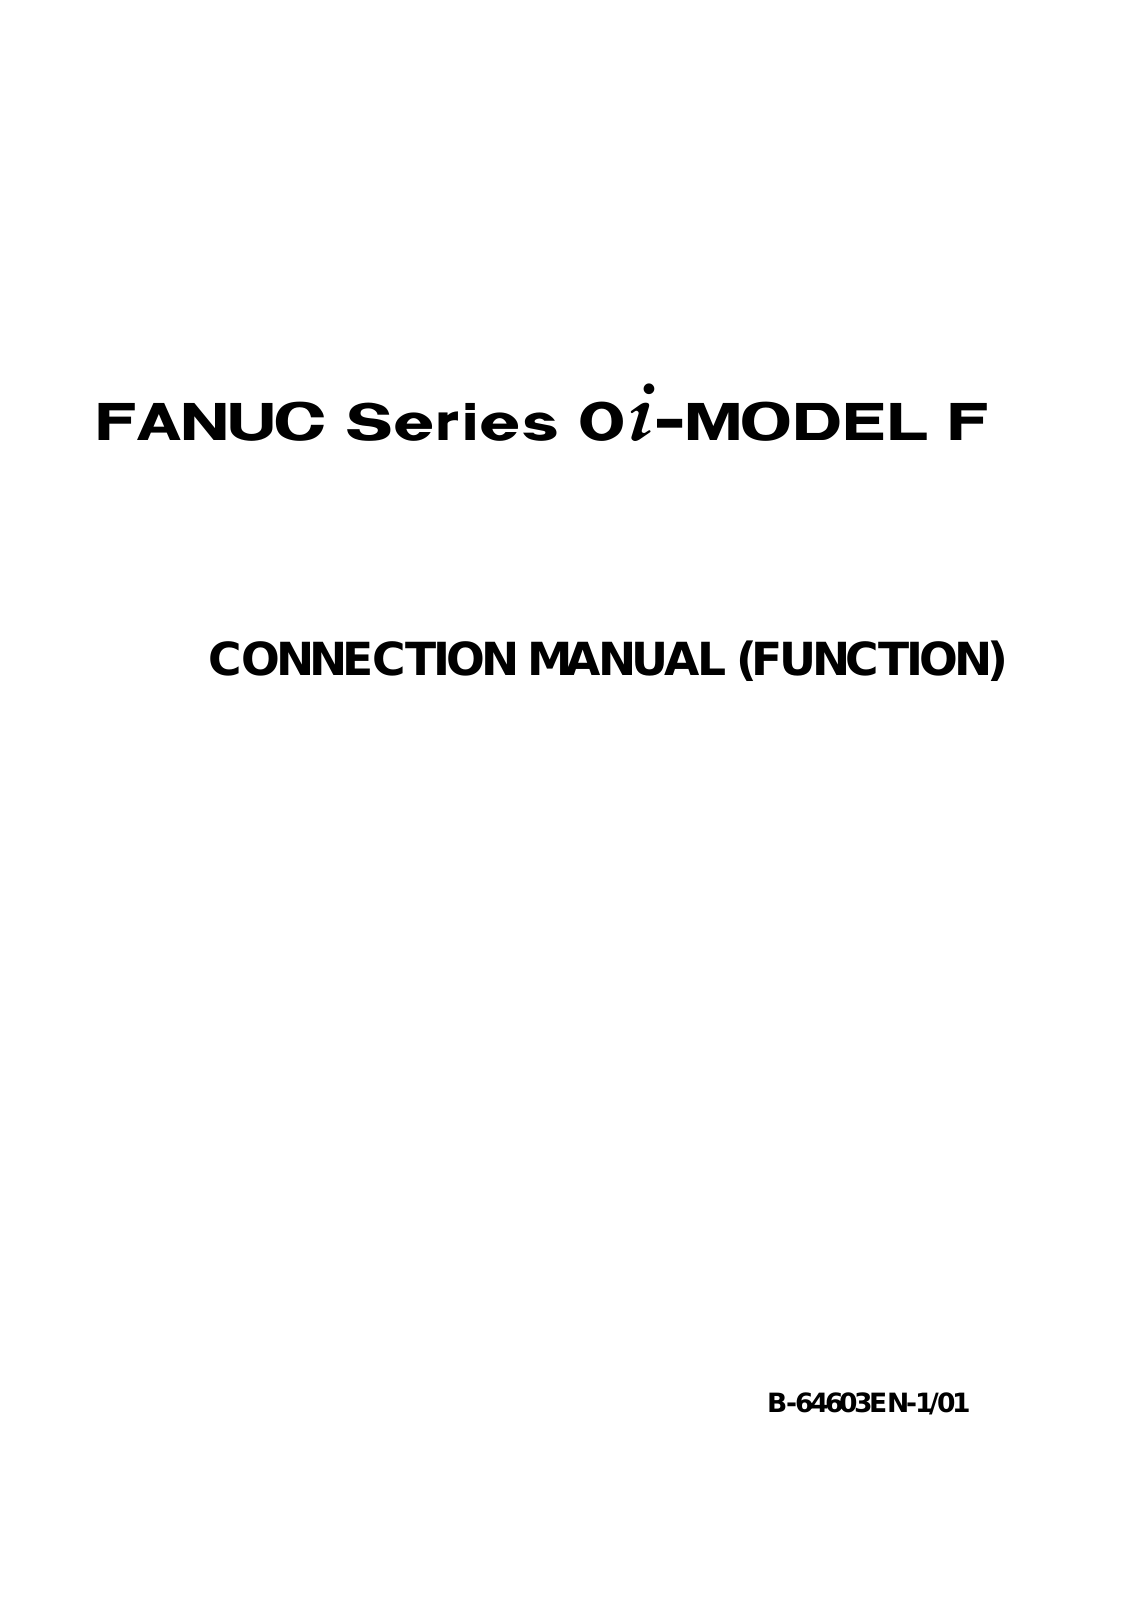 fanuc B-64603EN-1-01 CONNECTION MANUAL